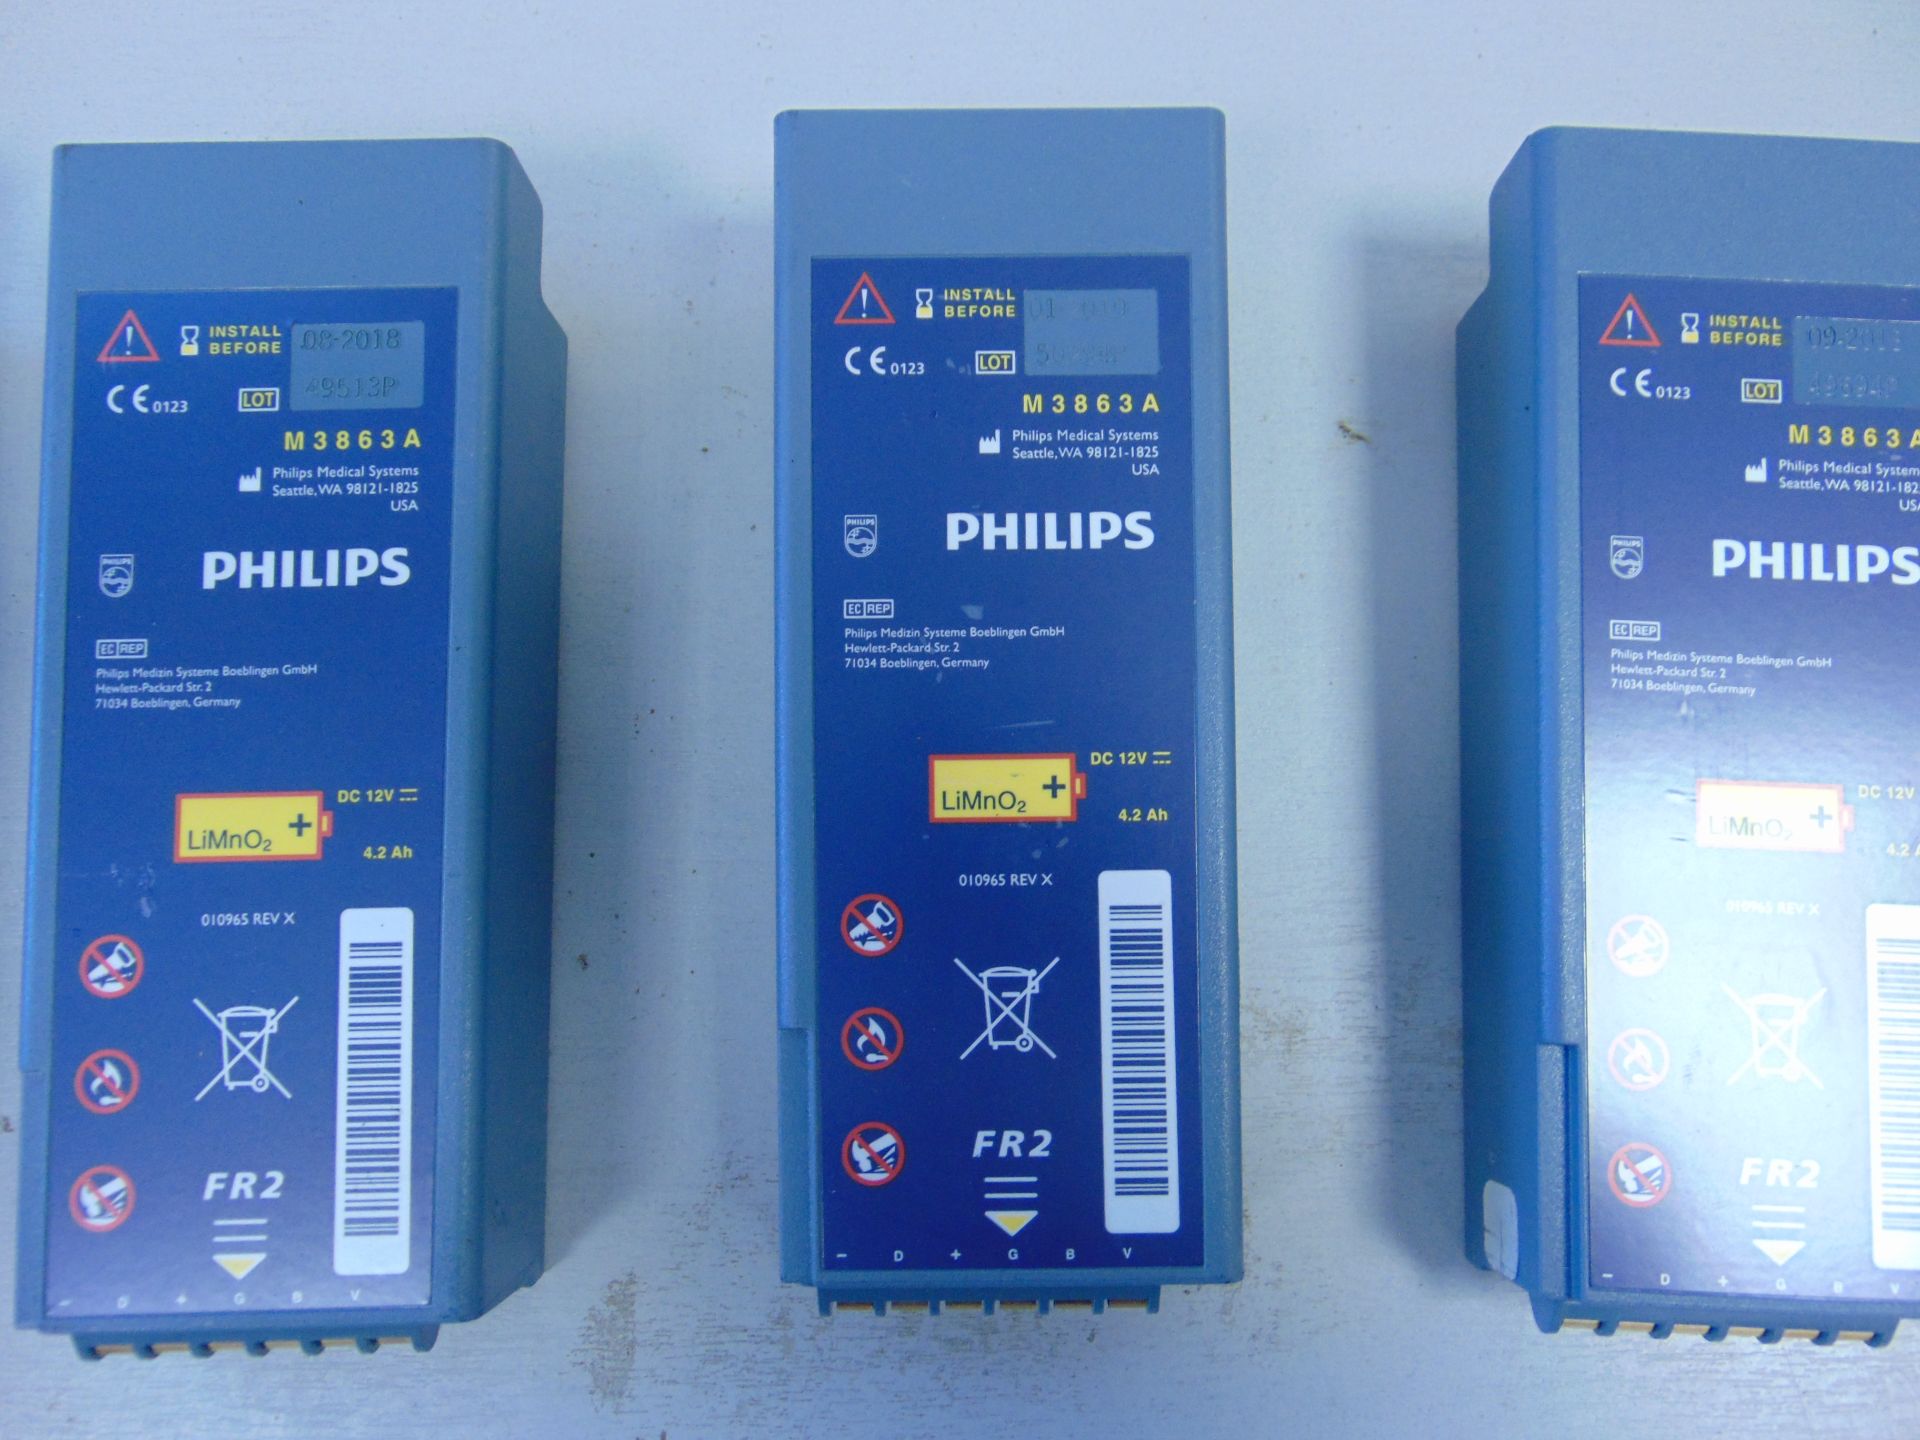 6 x Philips Heartstart FR2 Defibrillator Batteries - Image 3 of 3